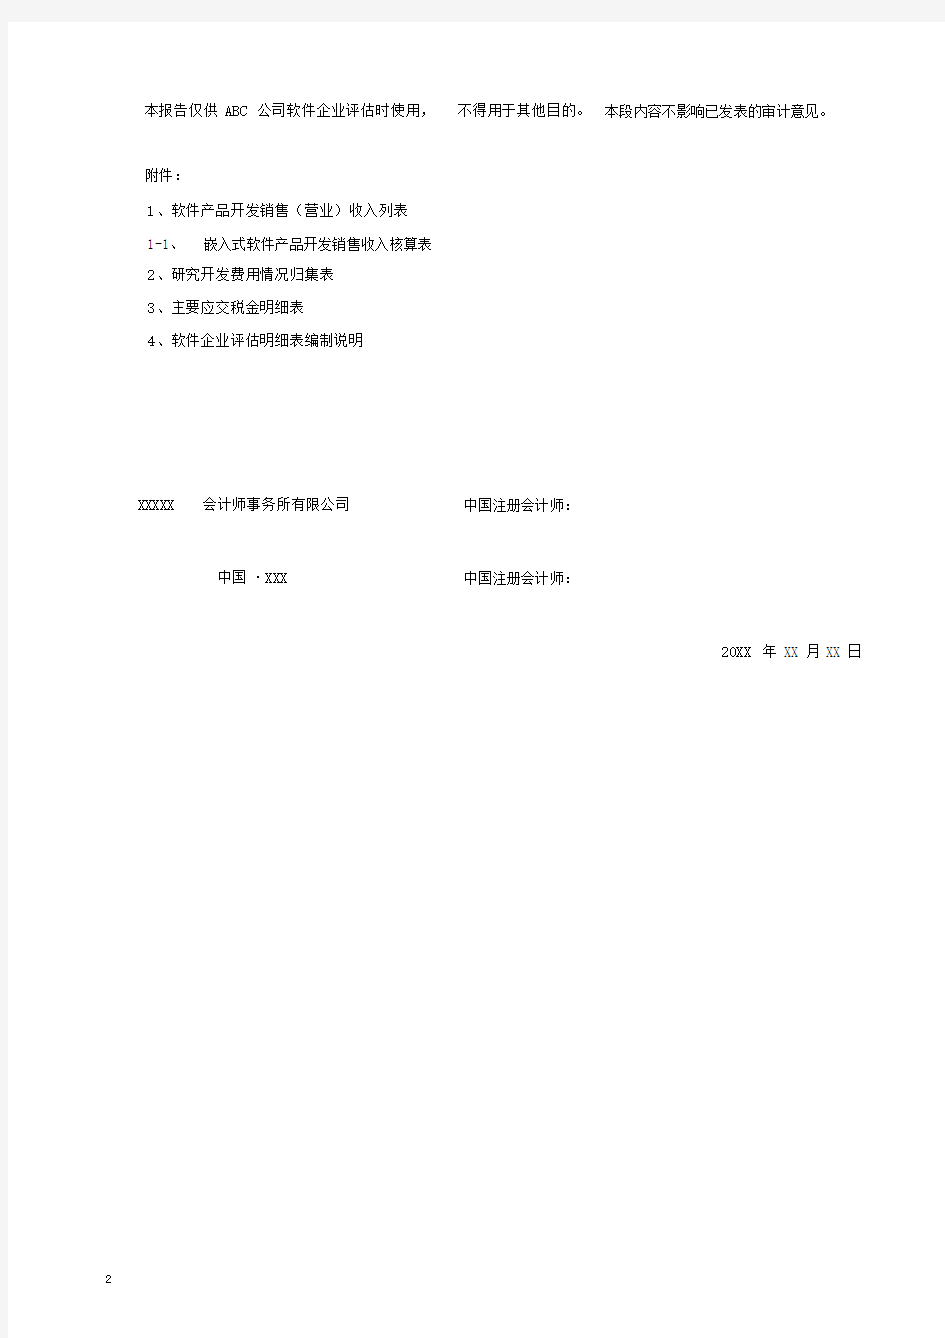 完整word版,专项审计报告(参考模版).docx